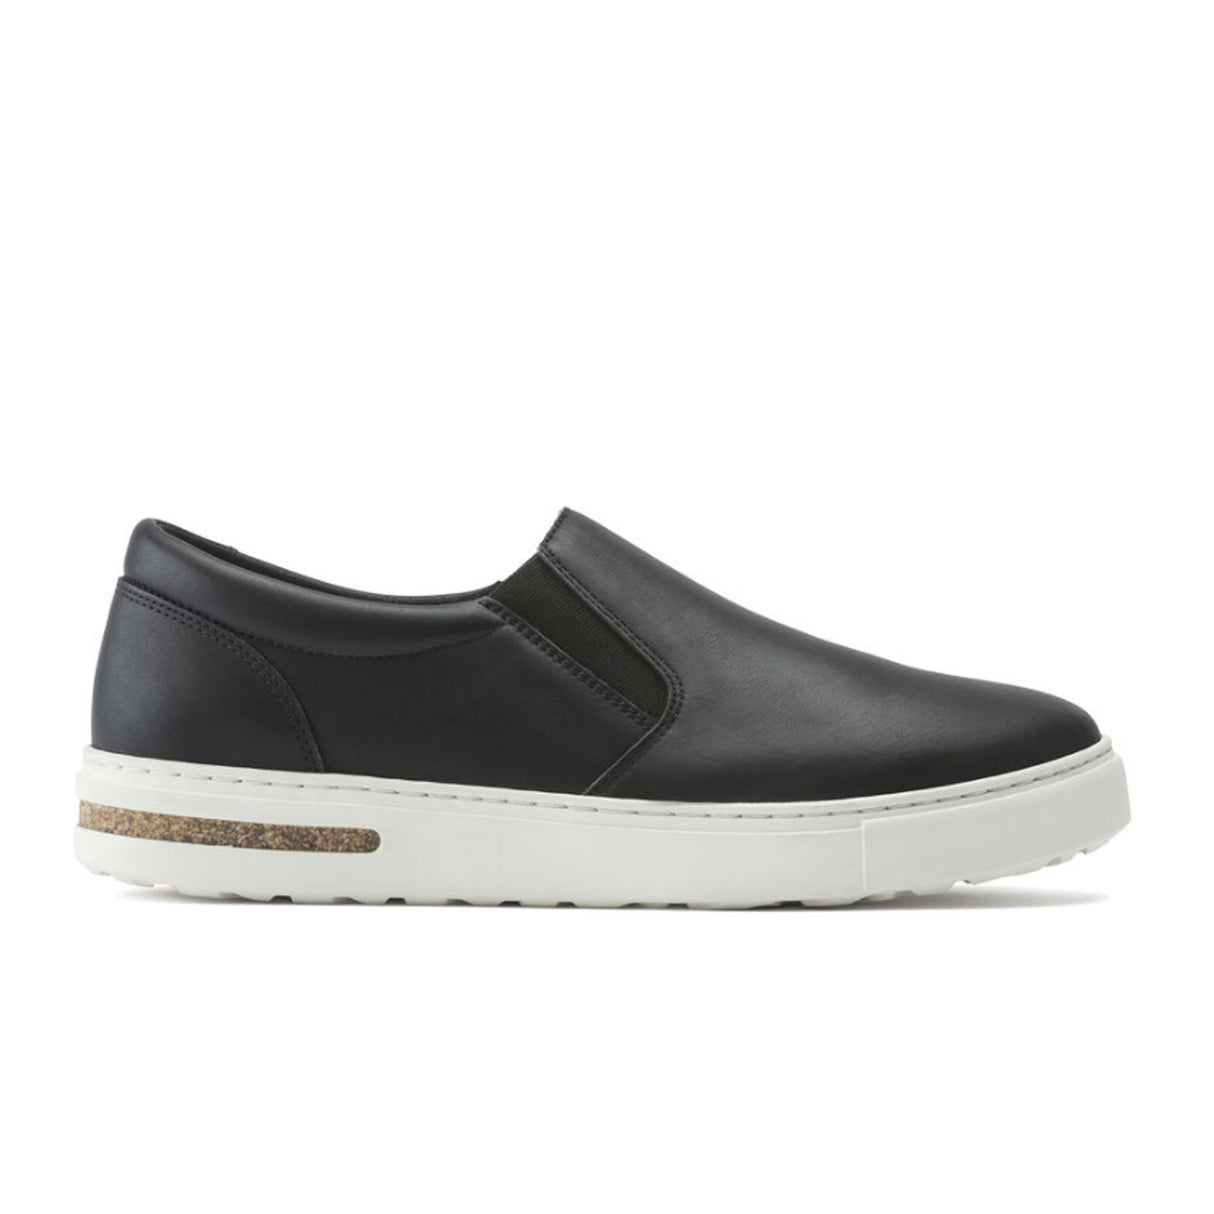 Birkenstock Oswego Narrow Slip On Sneaker (Women) - Black Leather Dress-Casual - Sneakers - The Heel Shoe Fitters